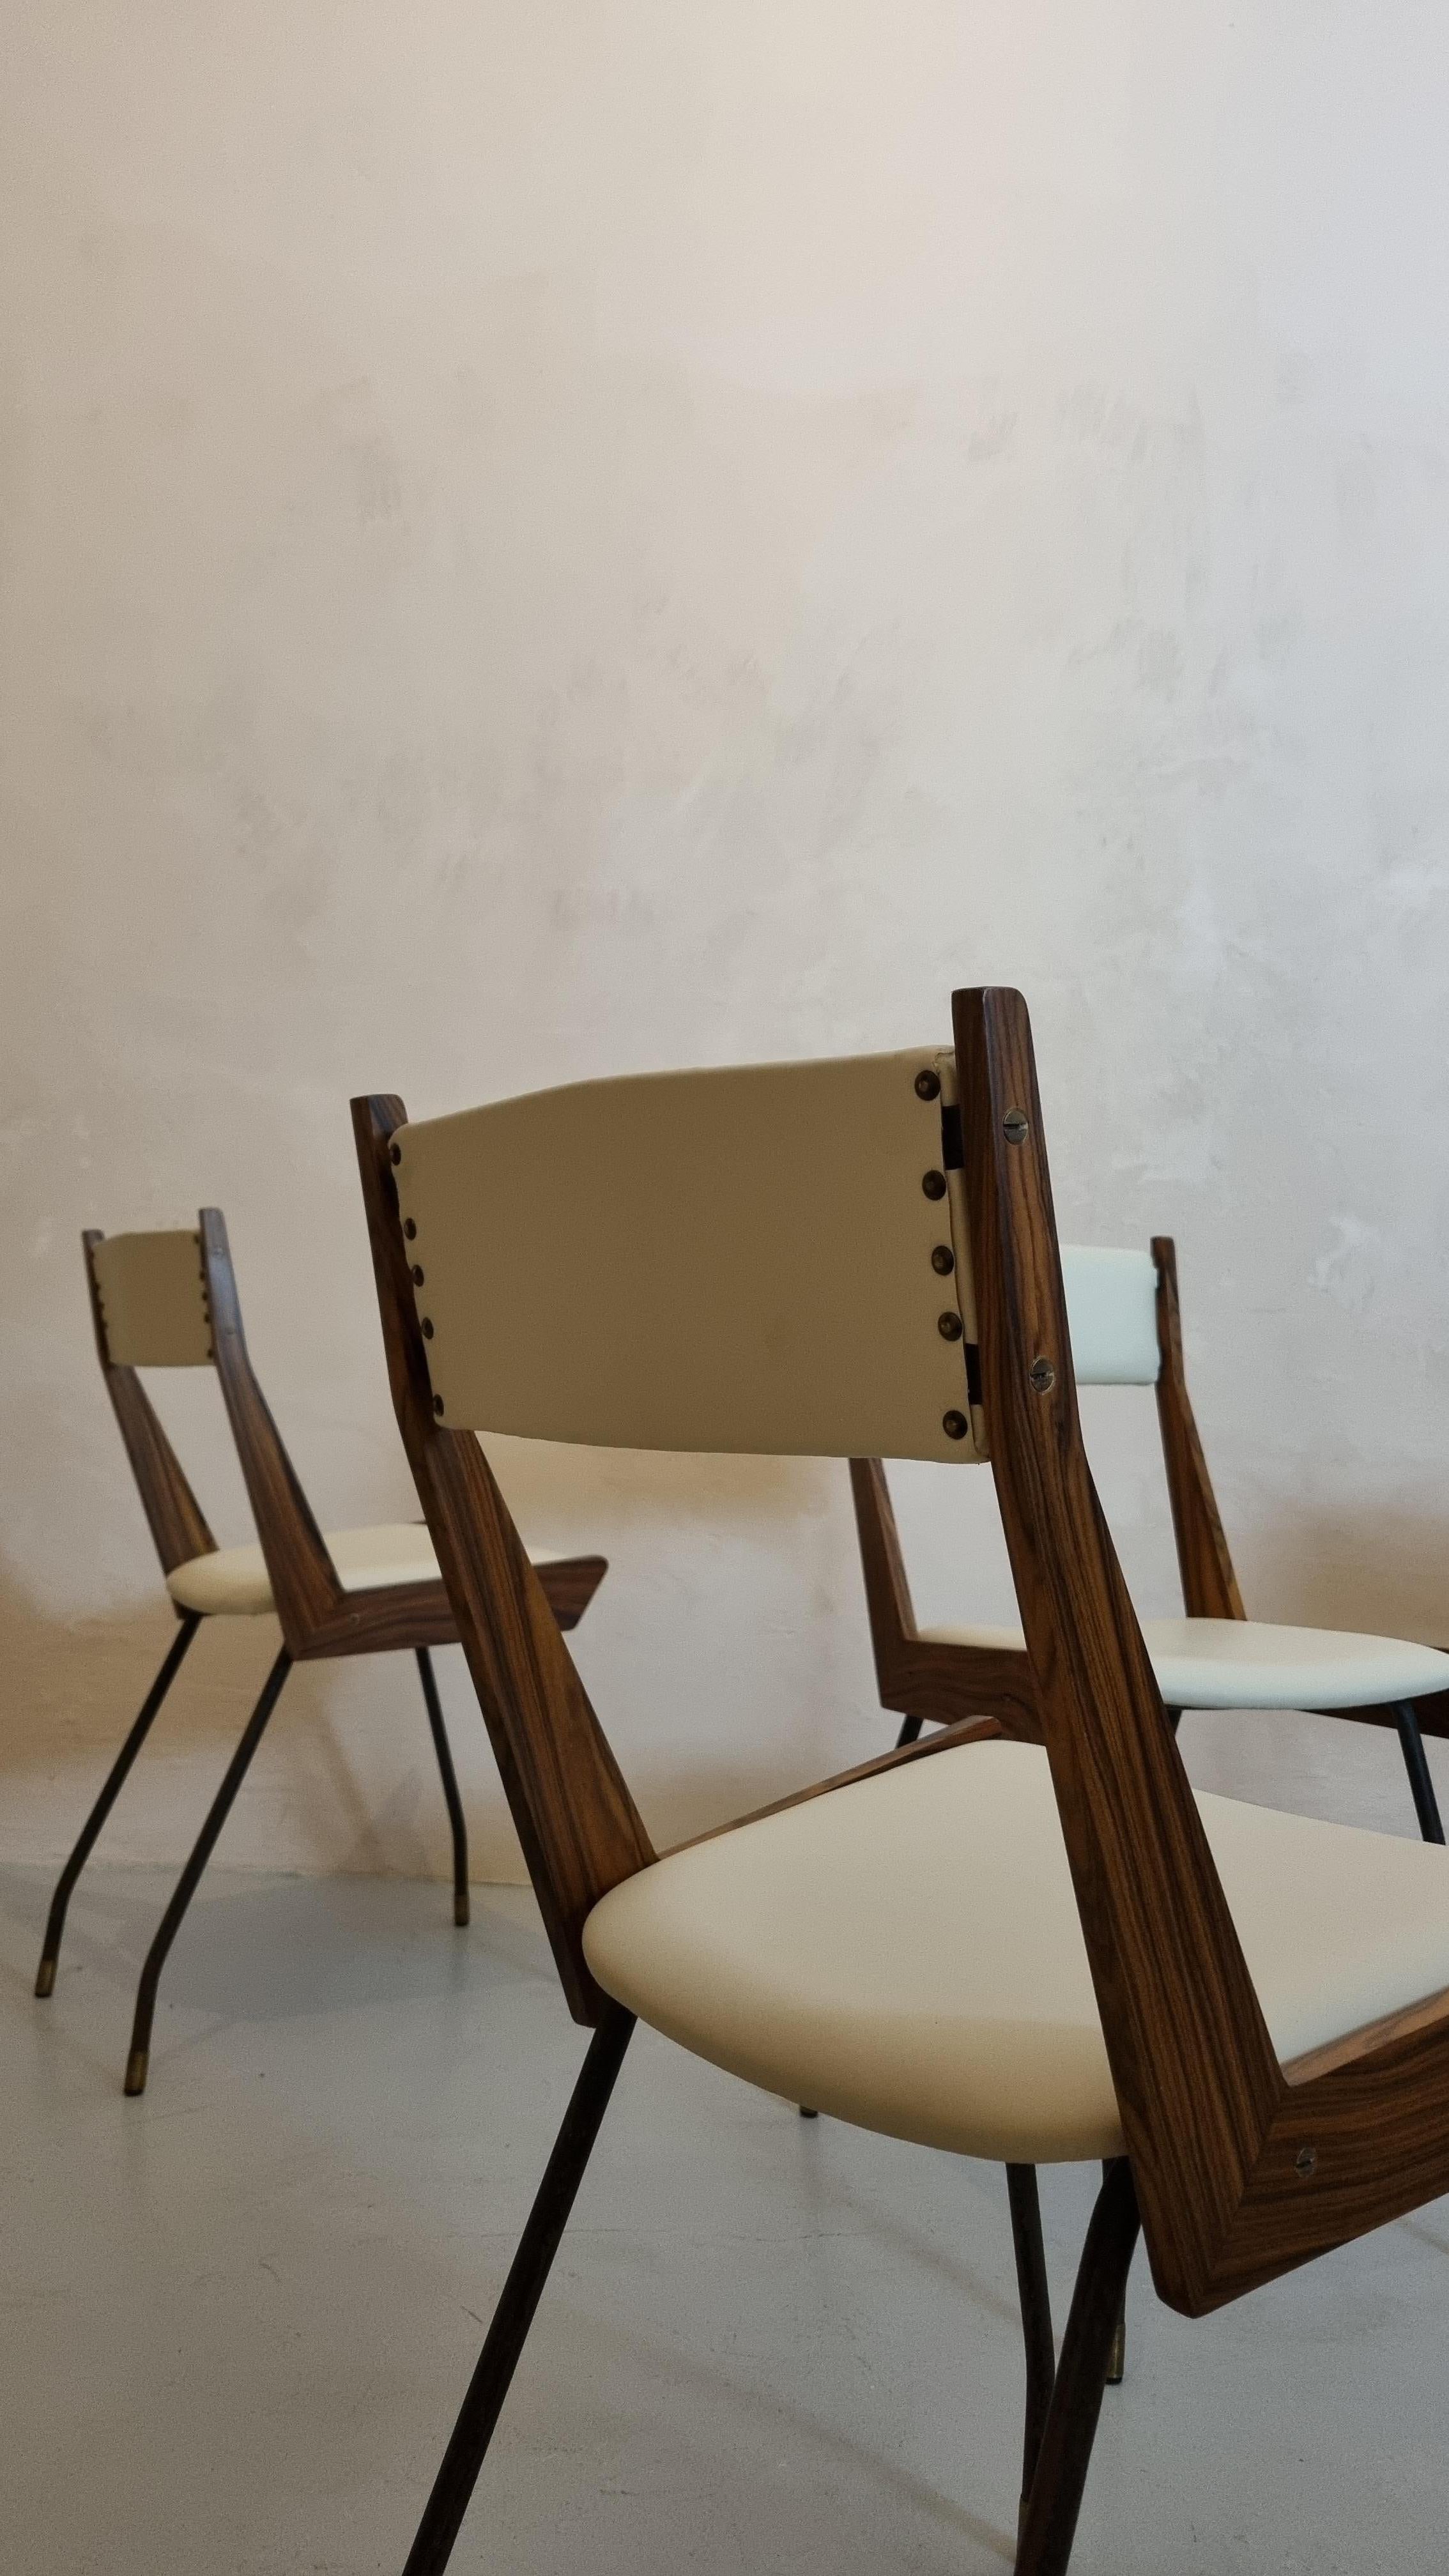 Italian Set of 6 Chairs by Carlo Ratti for Industria Compensati Curvati 50s For Sale